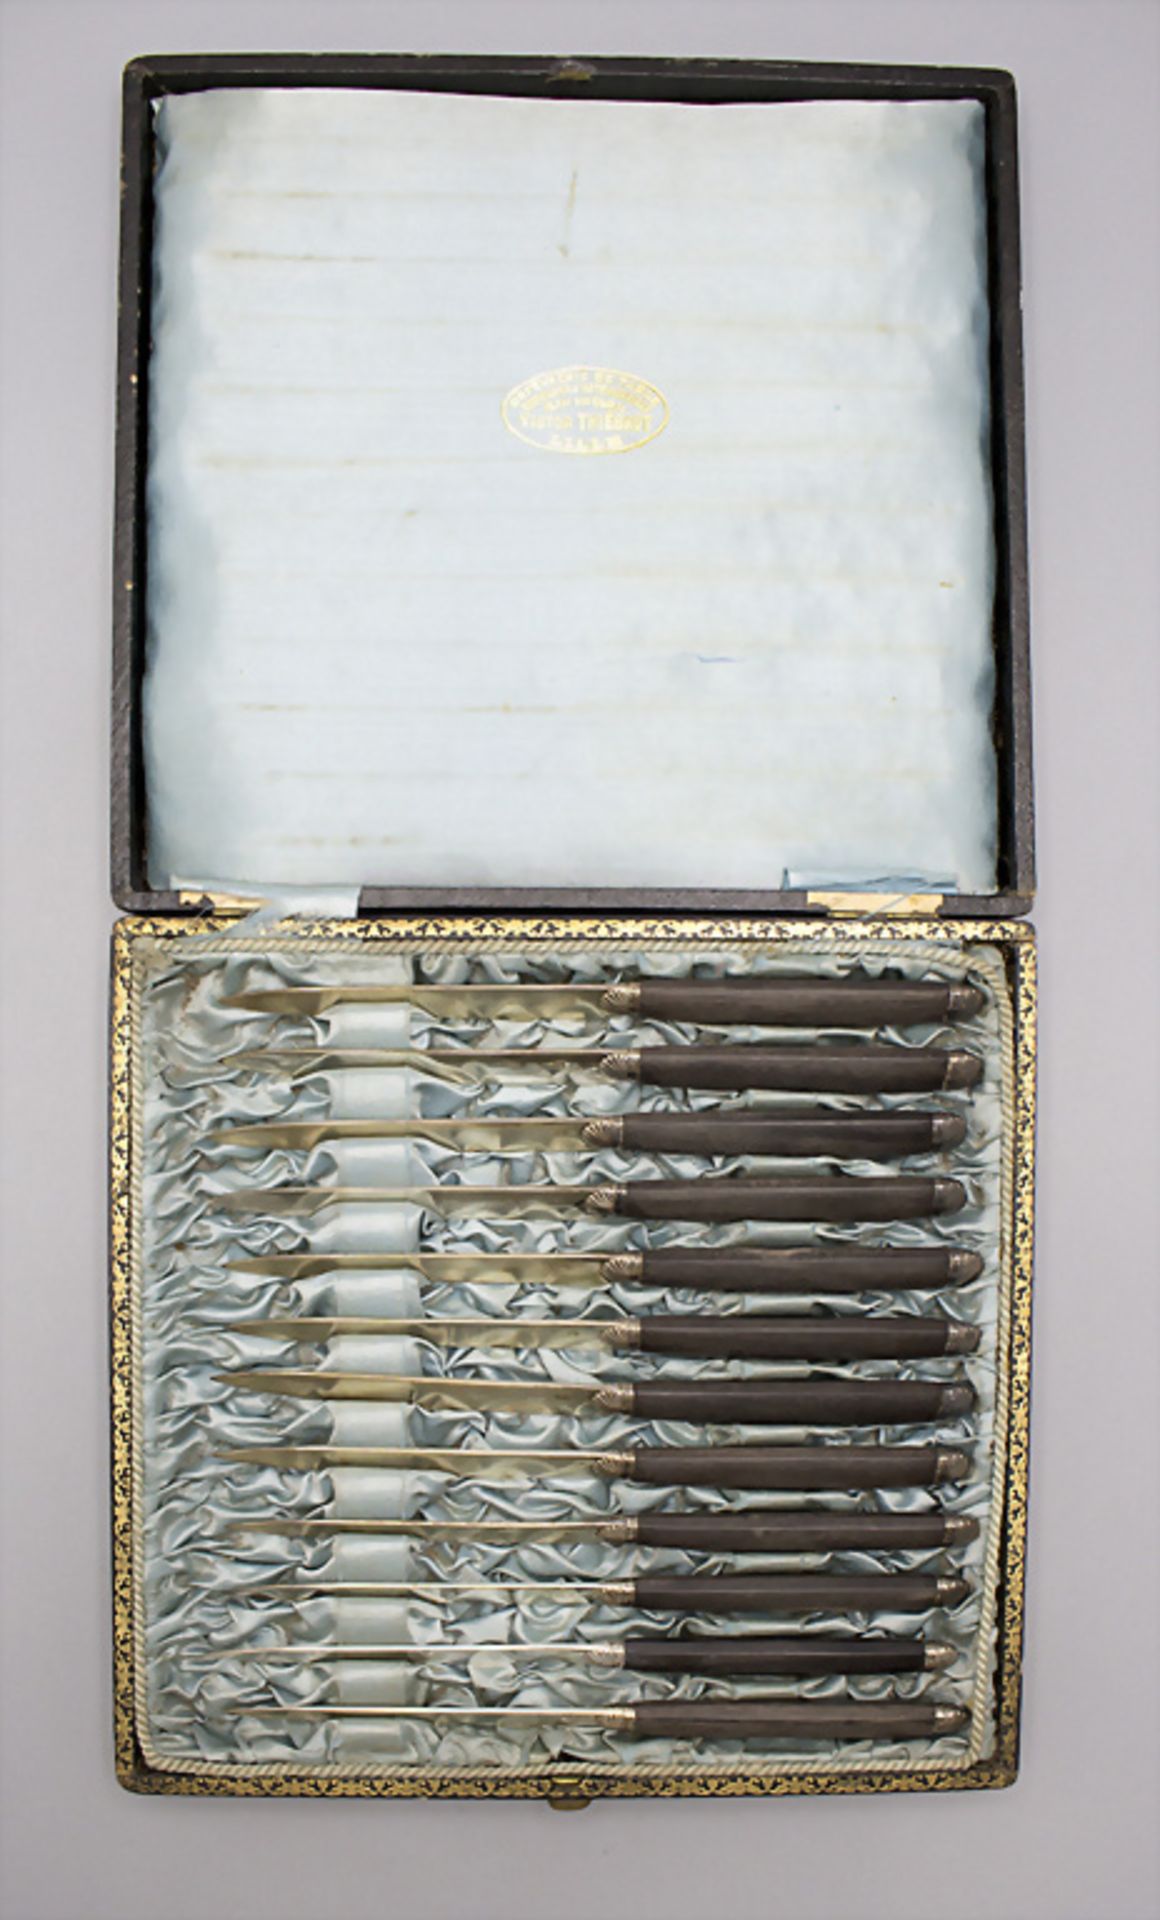 12 Messer mit Silberklingen / 12 knives with silver blades, Gustave Leroy & Cie., Paris, 1896/1897